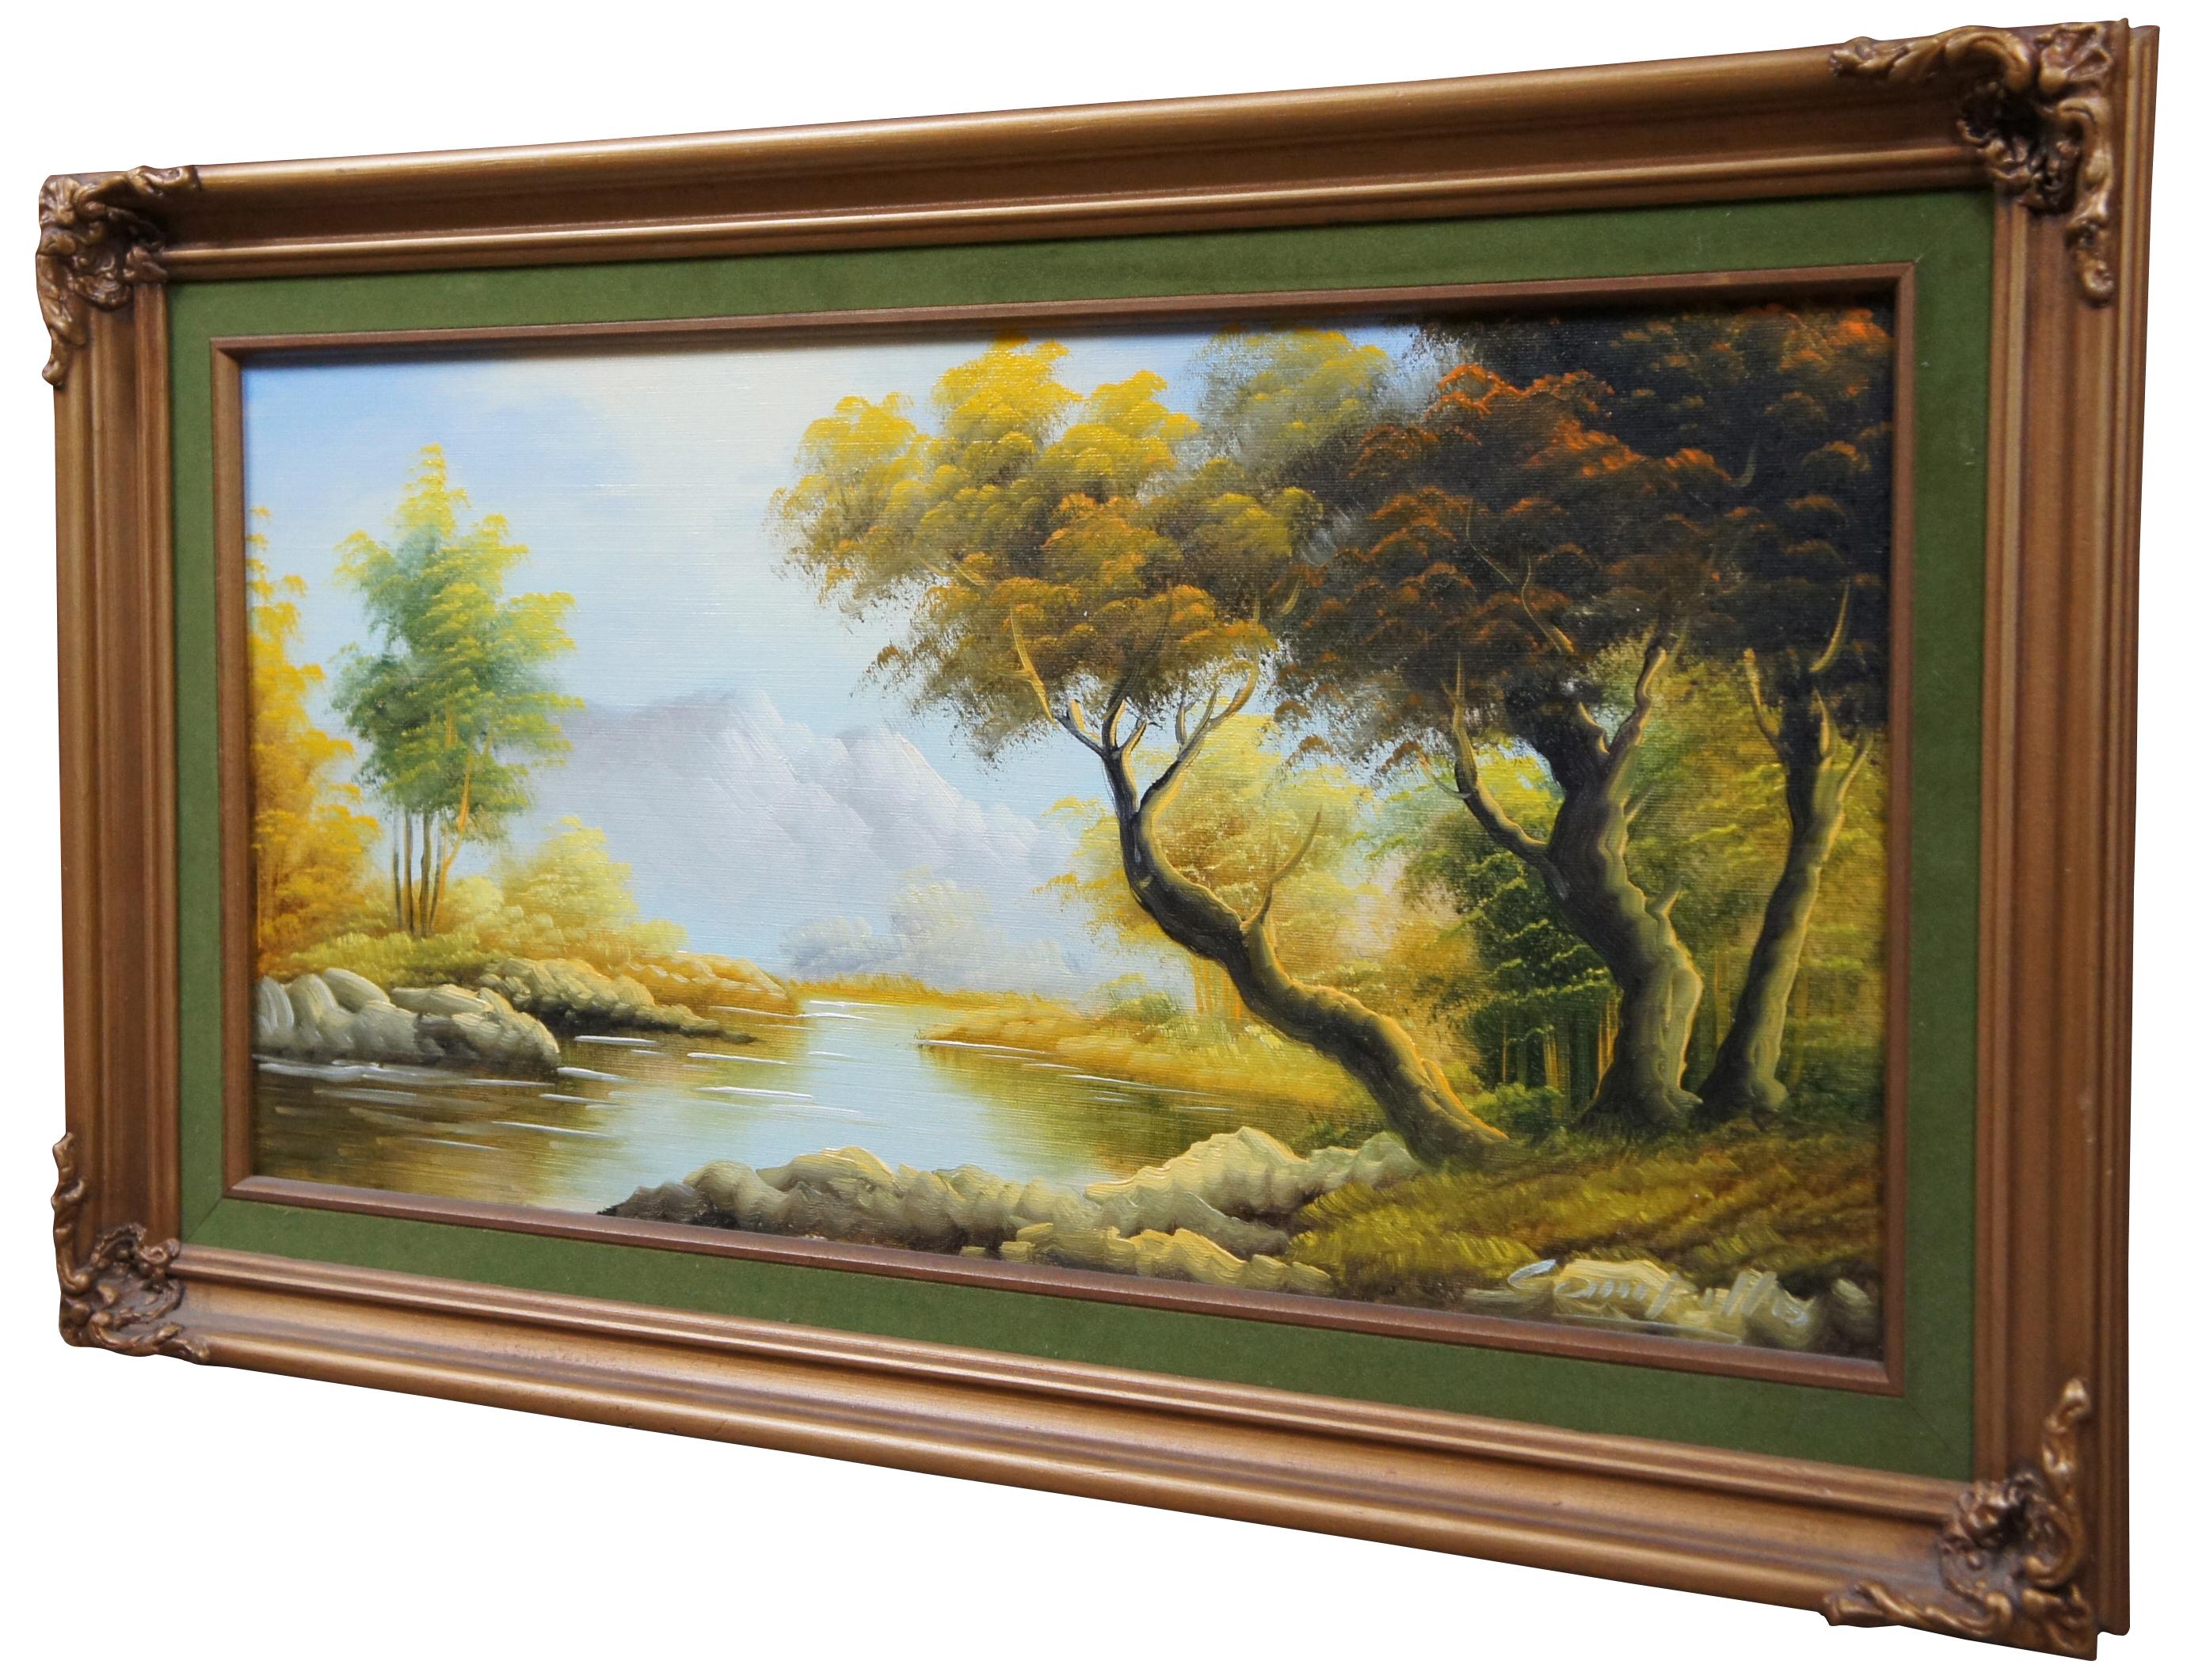 Peinture vintage à l'huile sur toile représentant un paysage d'automne avec rivière et montagnes ; signée Campillo dans le coin inférieur.

Dimensions : 28,75